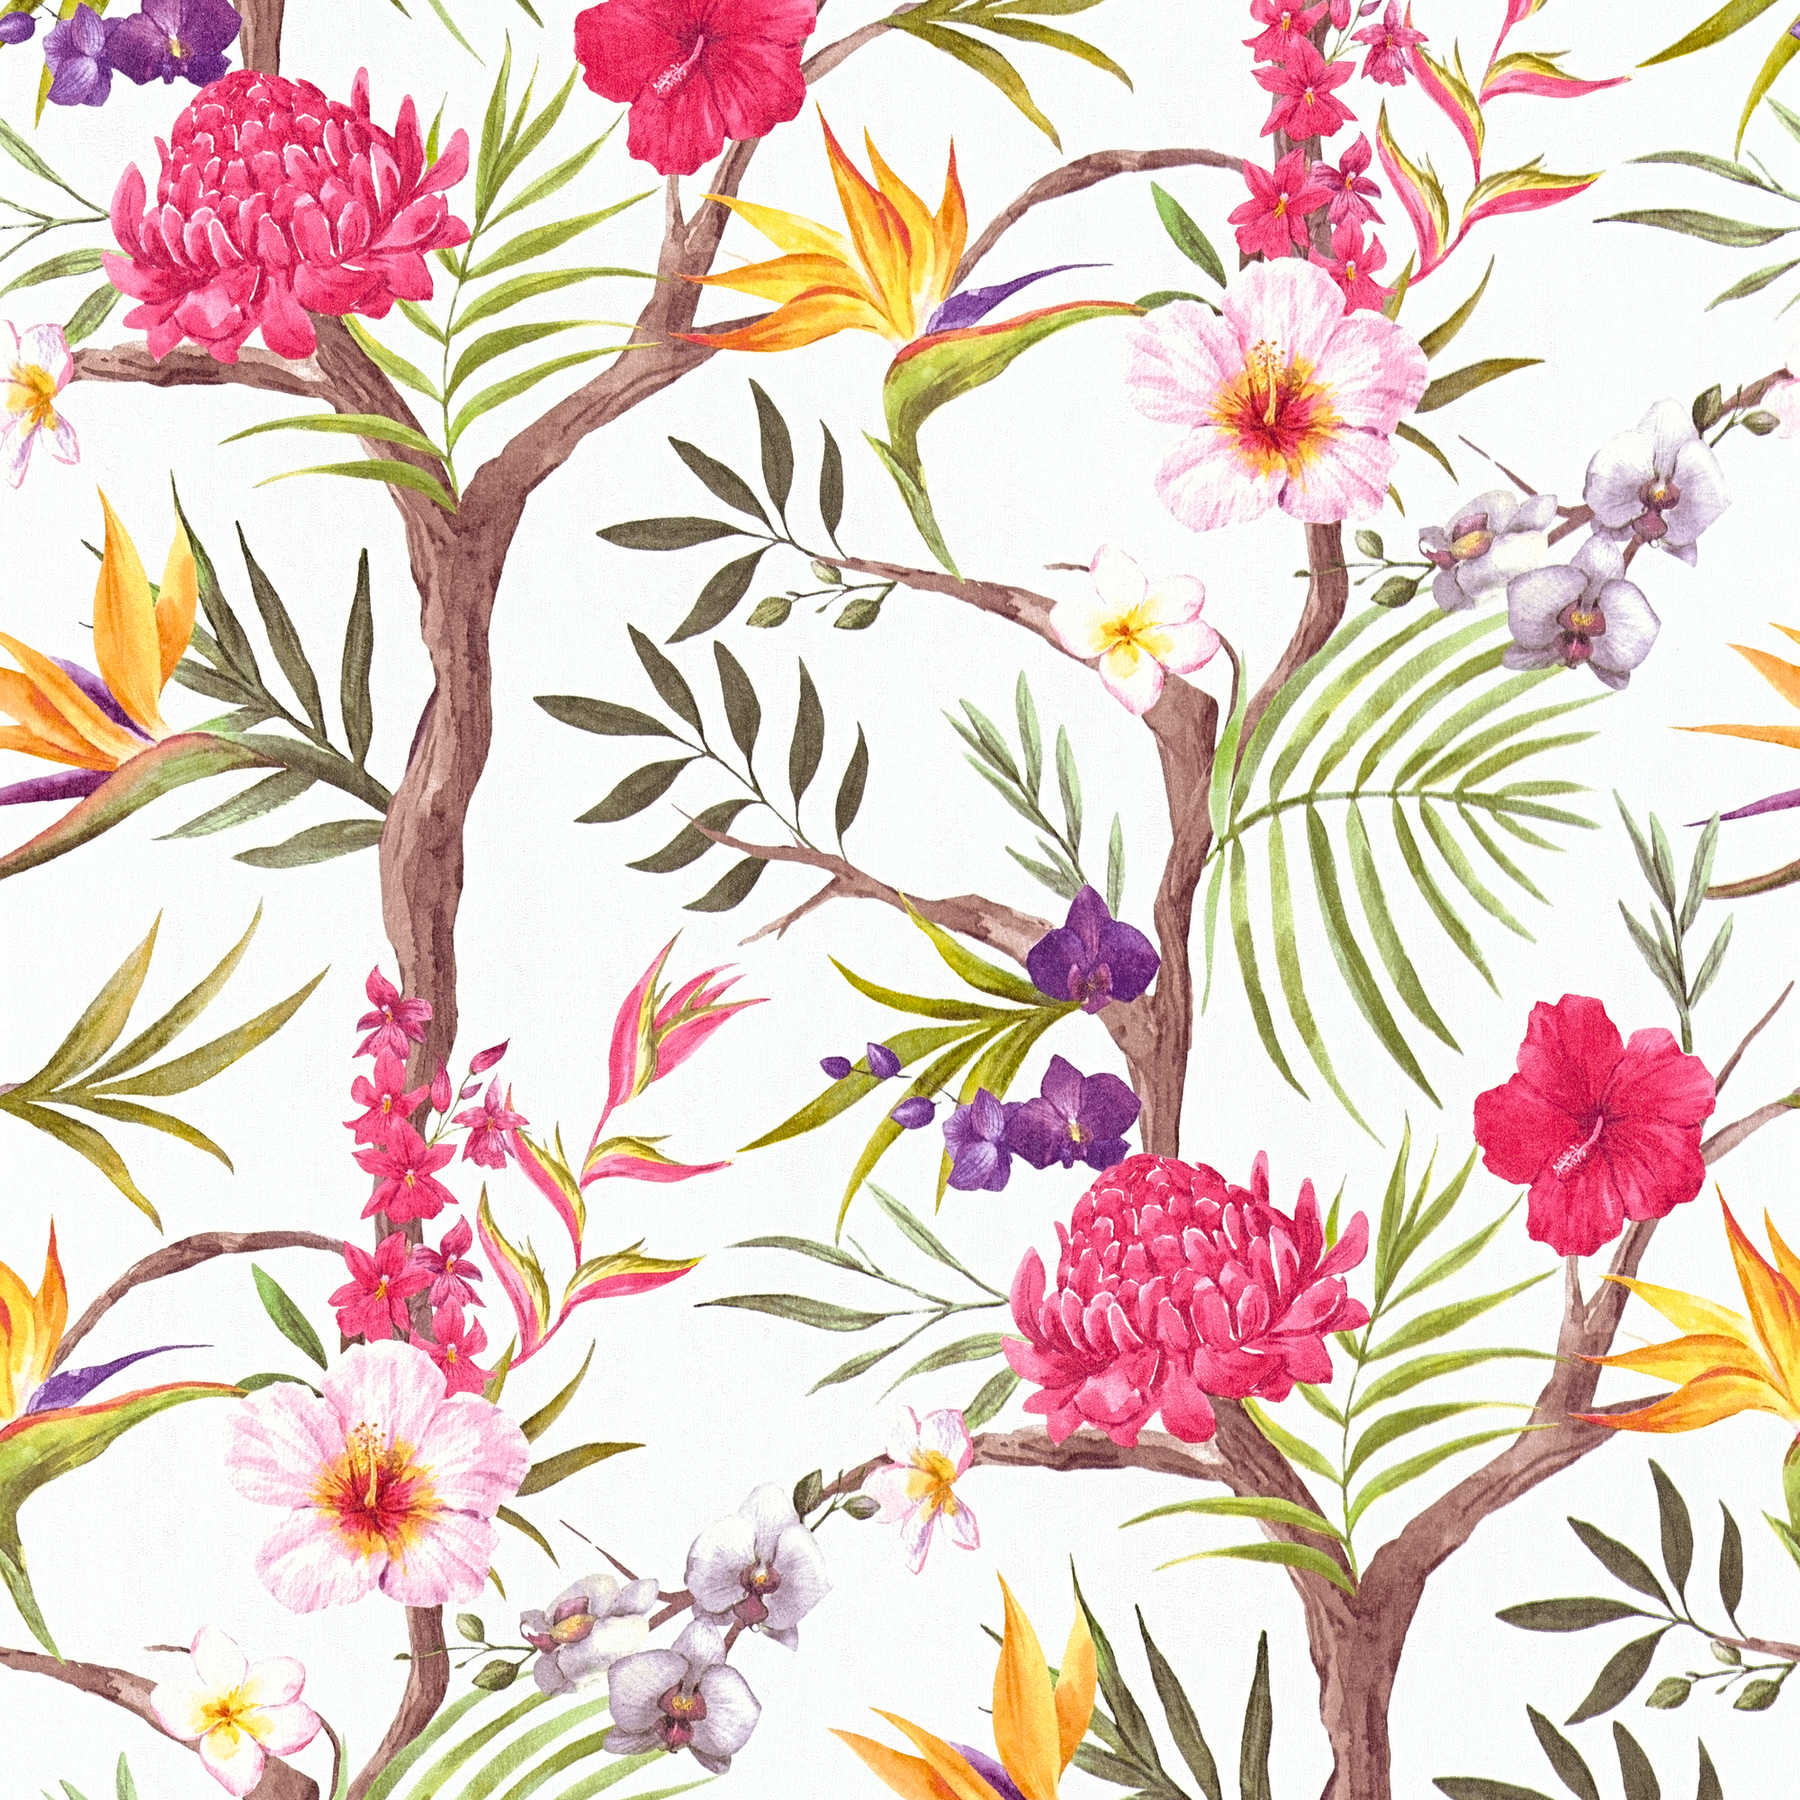         Dschungel Blüten Vliestapete in lebhaften Farben – Bunt, Rot, Gelb, Braun, Grün
    